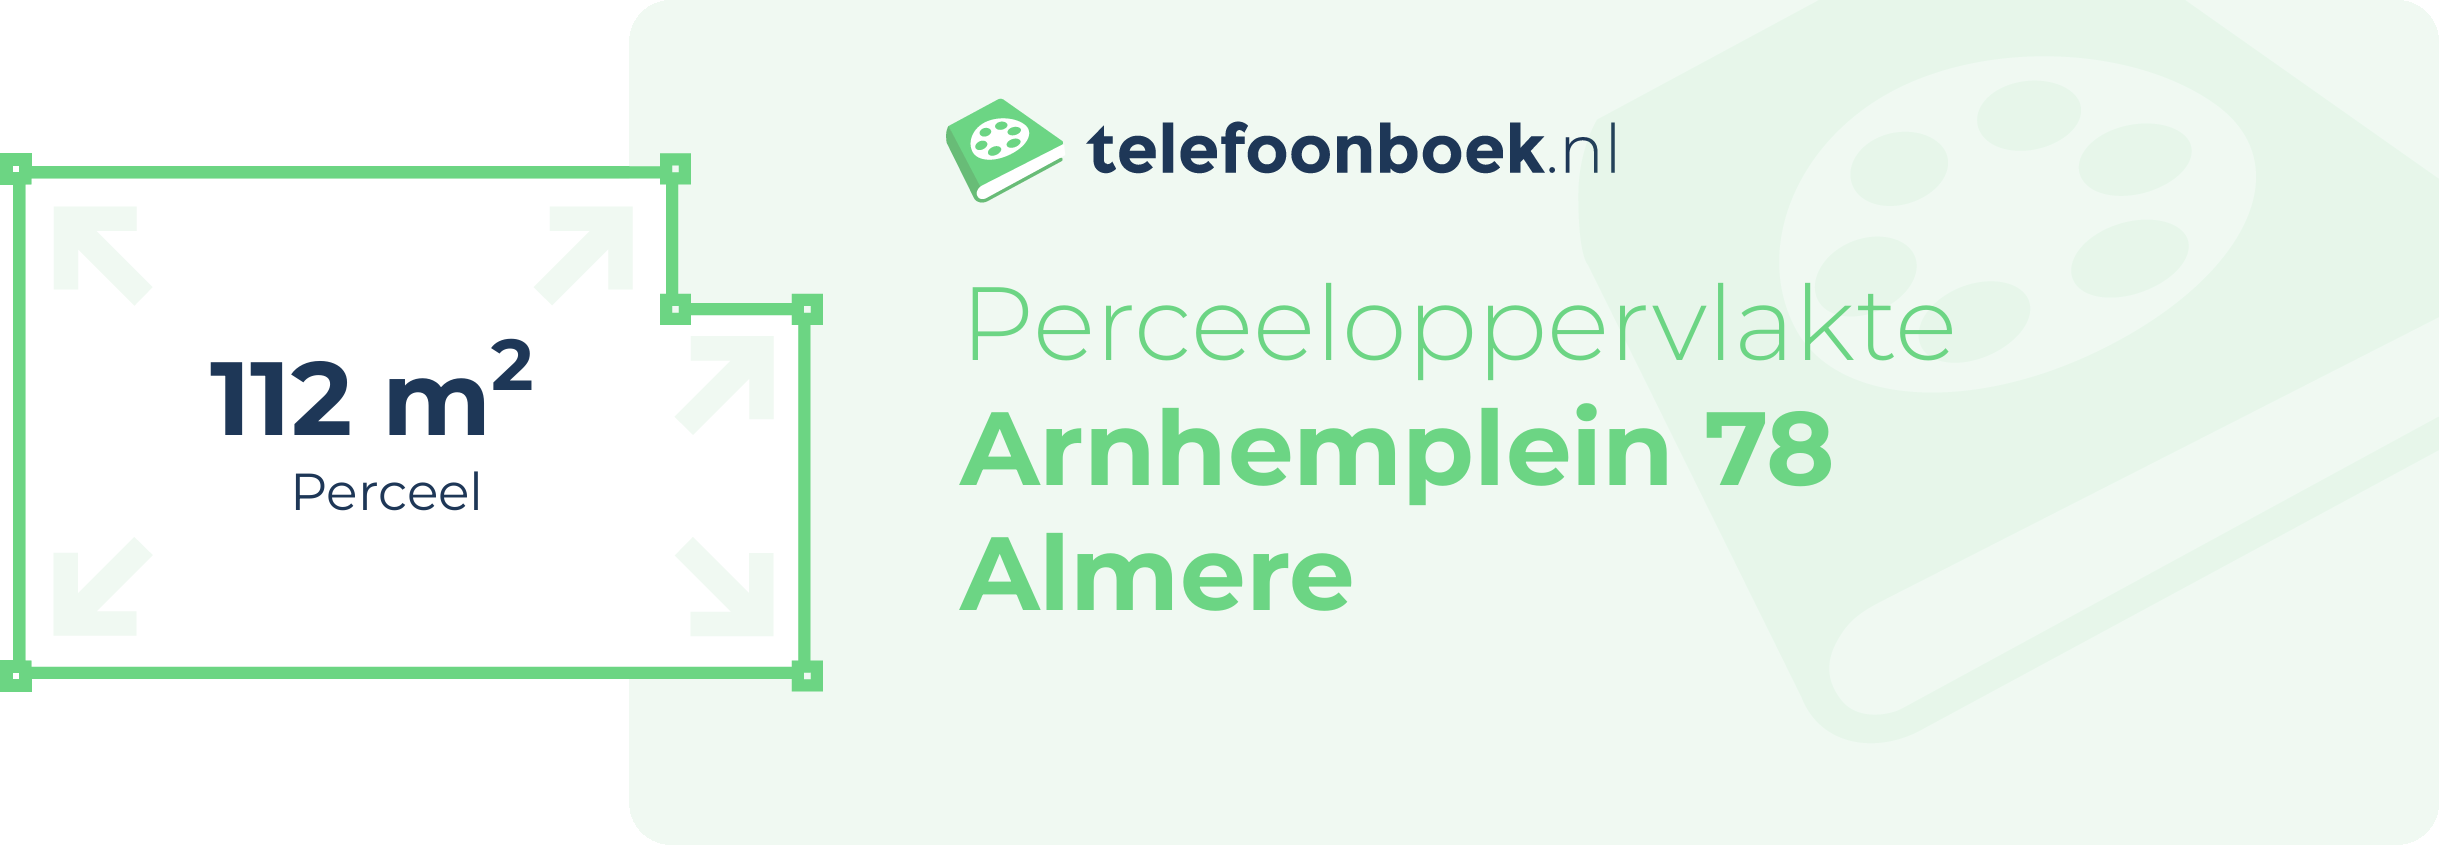 Perceeloppervlakte Arnhemplein 78 Almere